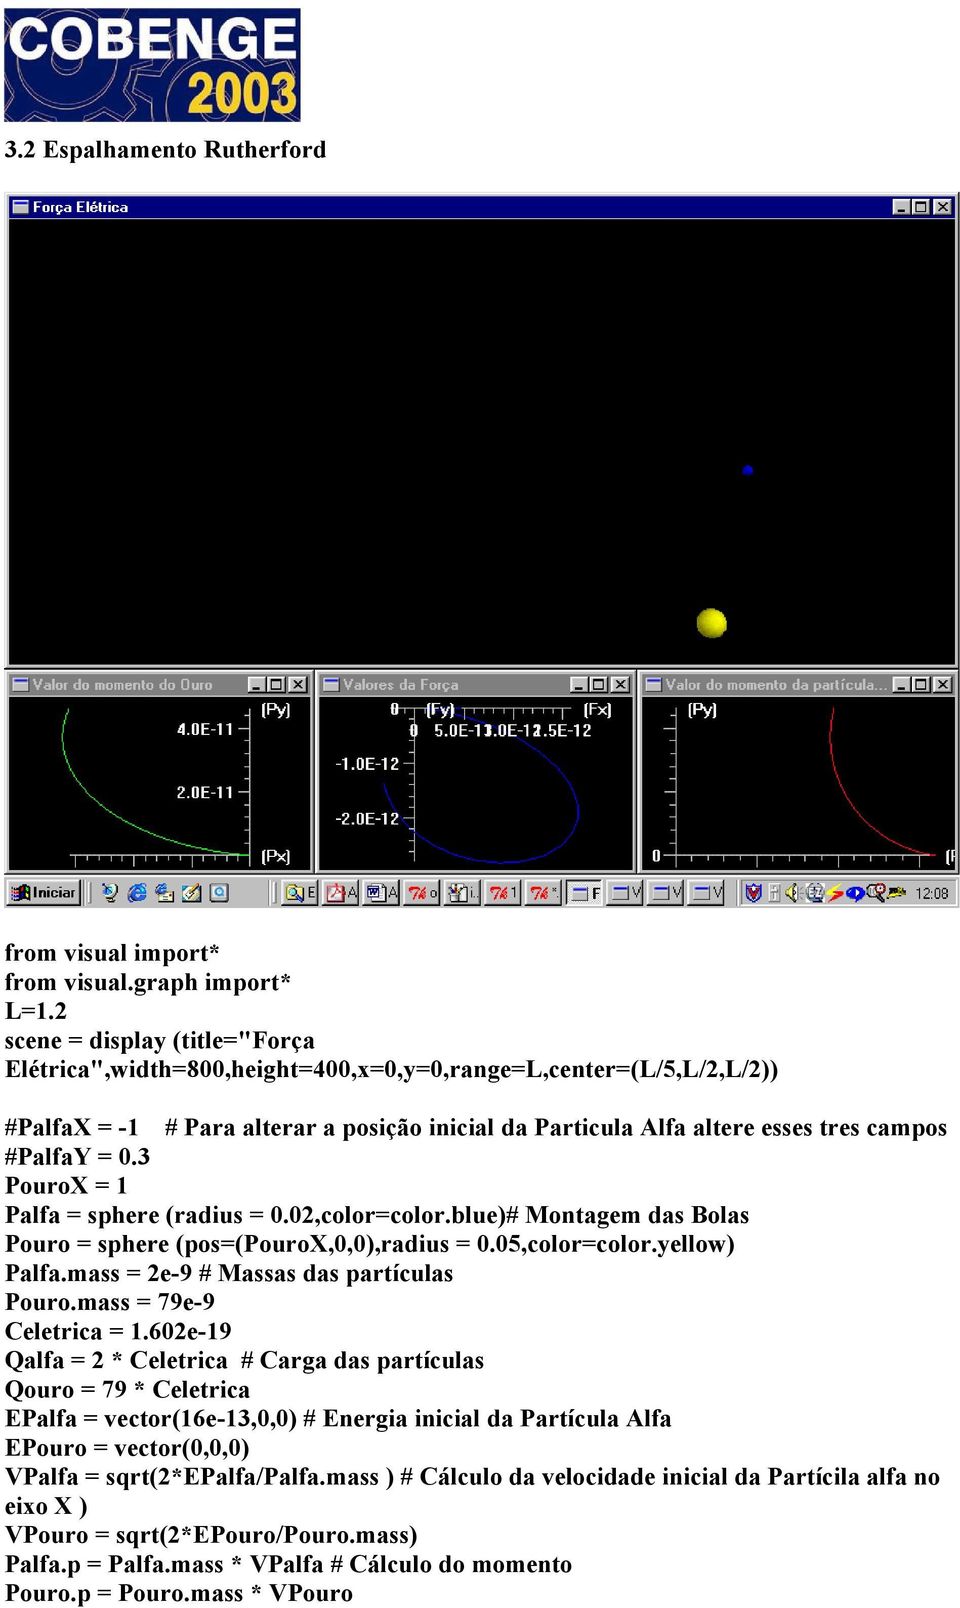 0.3 PouroX = 1 Palfa = sphere (radius = 0.02,color=color.blue)# Montagem das Bolas Pouro = sphere (pos=(pourox,0,0),radius = 0.05,color=color.yellow) Palfa.mass = 2e-9 # Massas das partículas Pouro.